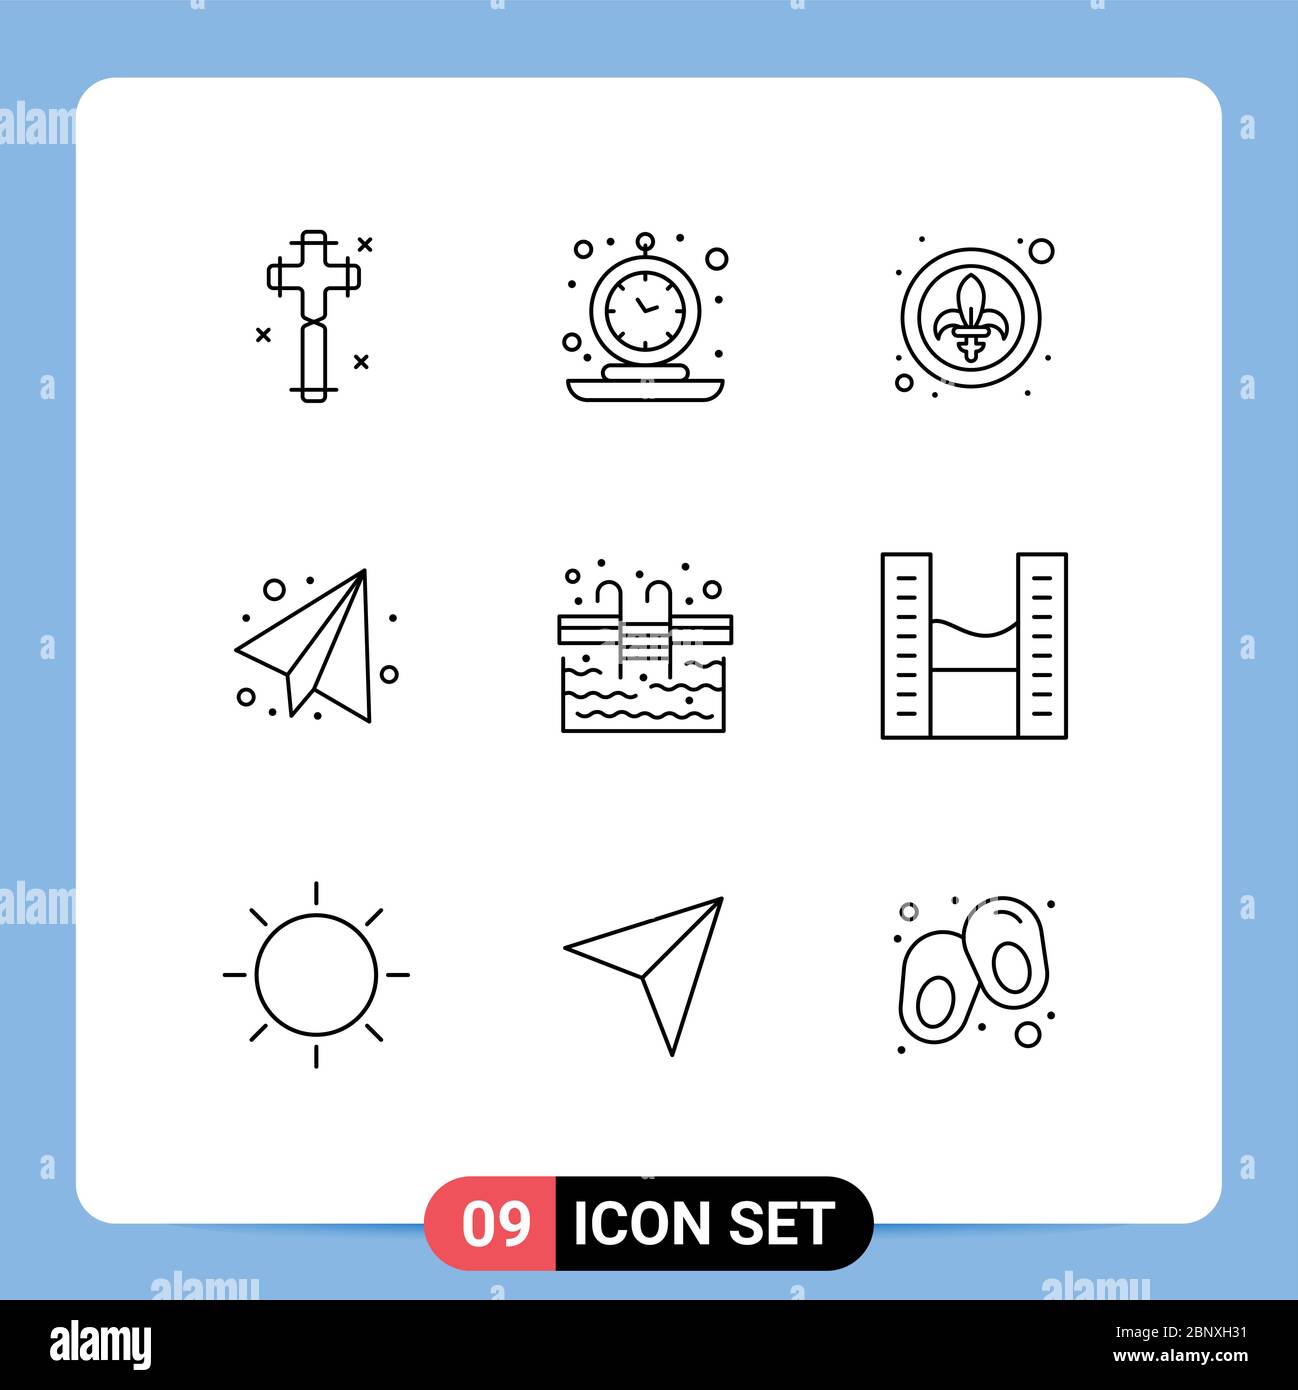 9 icone creative segni e simboli moderni di scale, piano di carta, tempo,  istruzione, lys Editable Vector Design Elements Immagine e Vettoriale -  Alamy